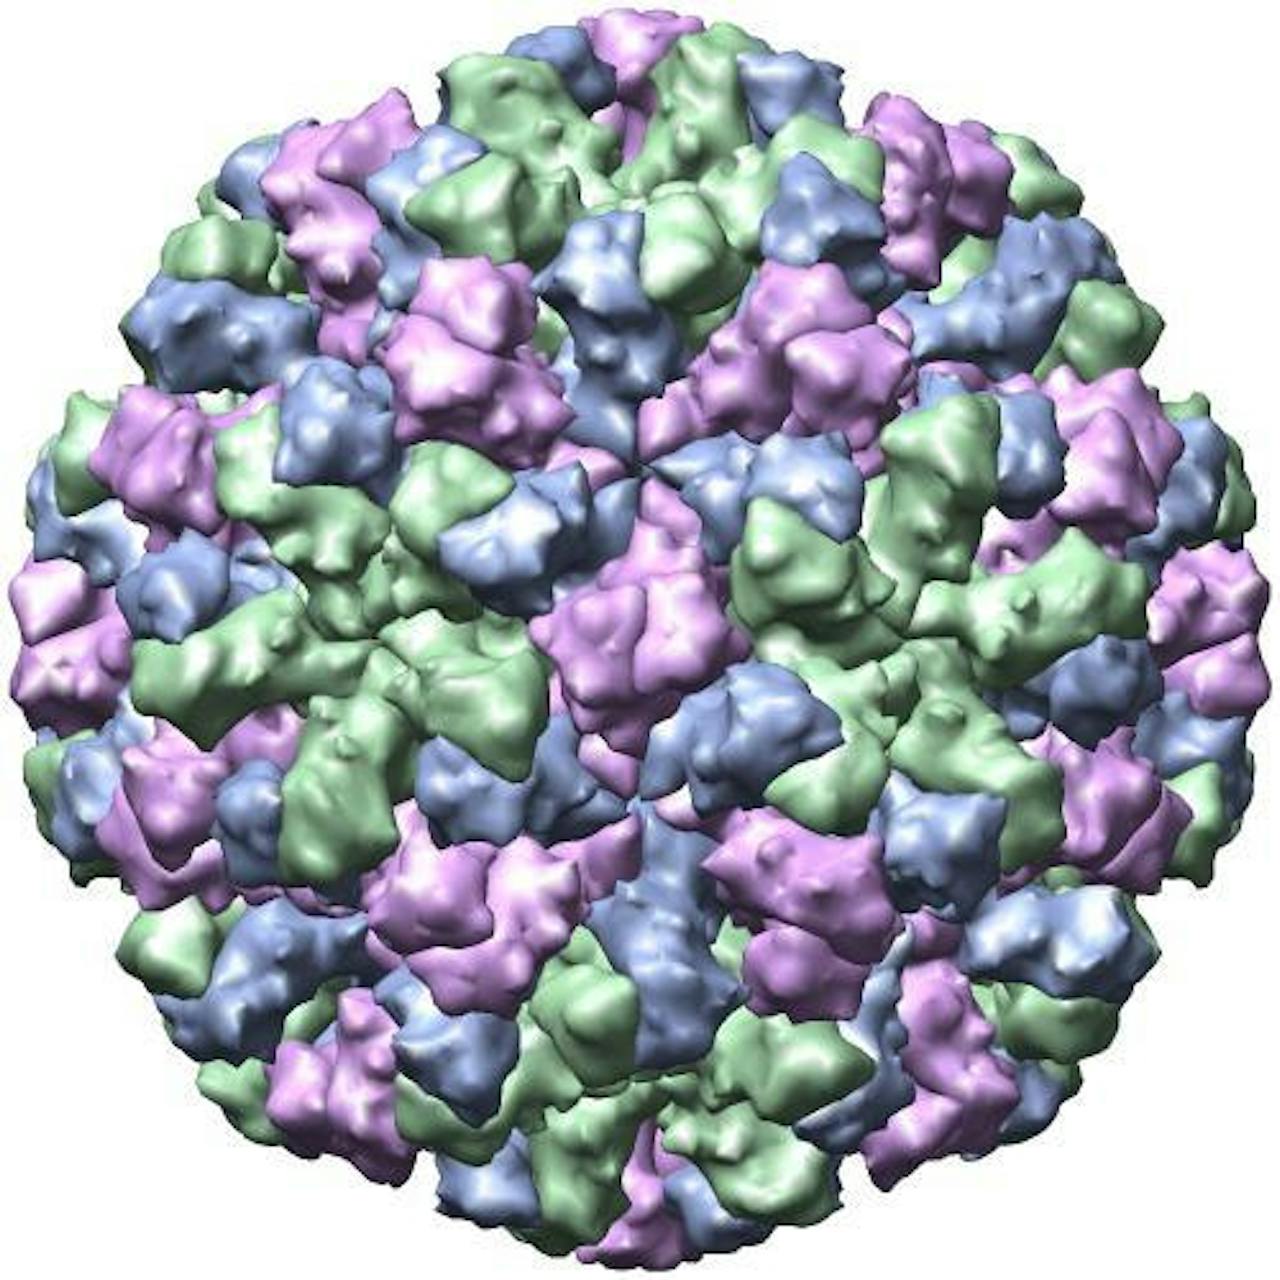 Een schematische weergave van het Norwalk-like virus.